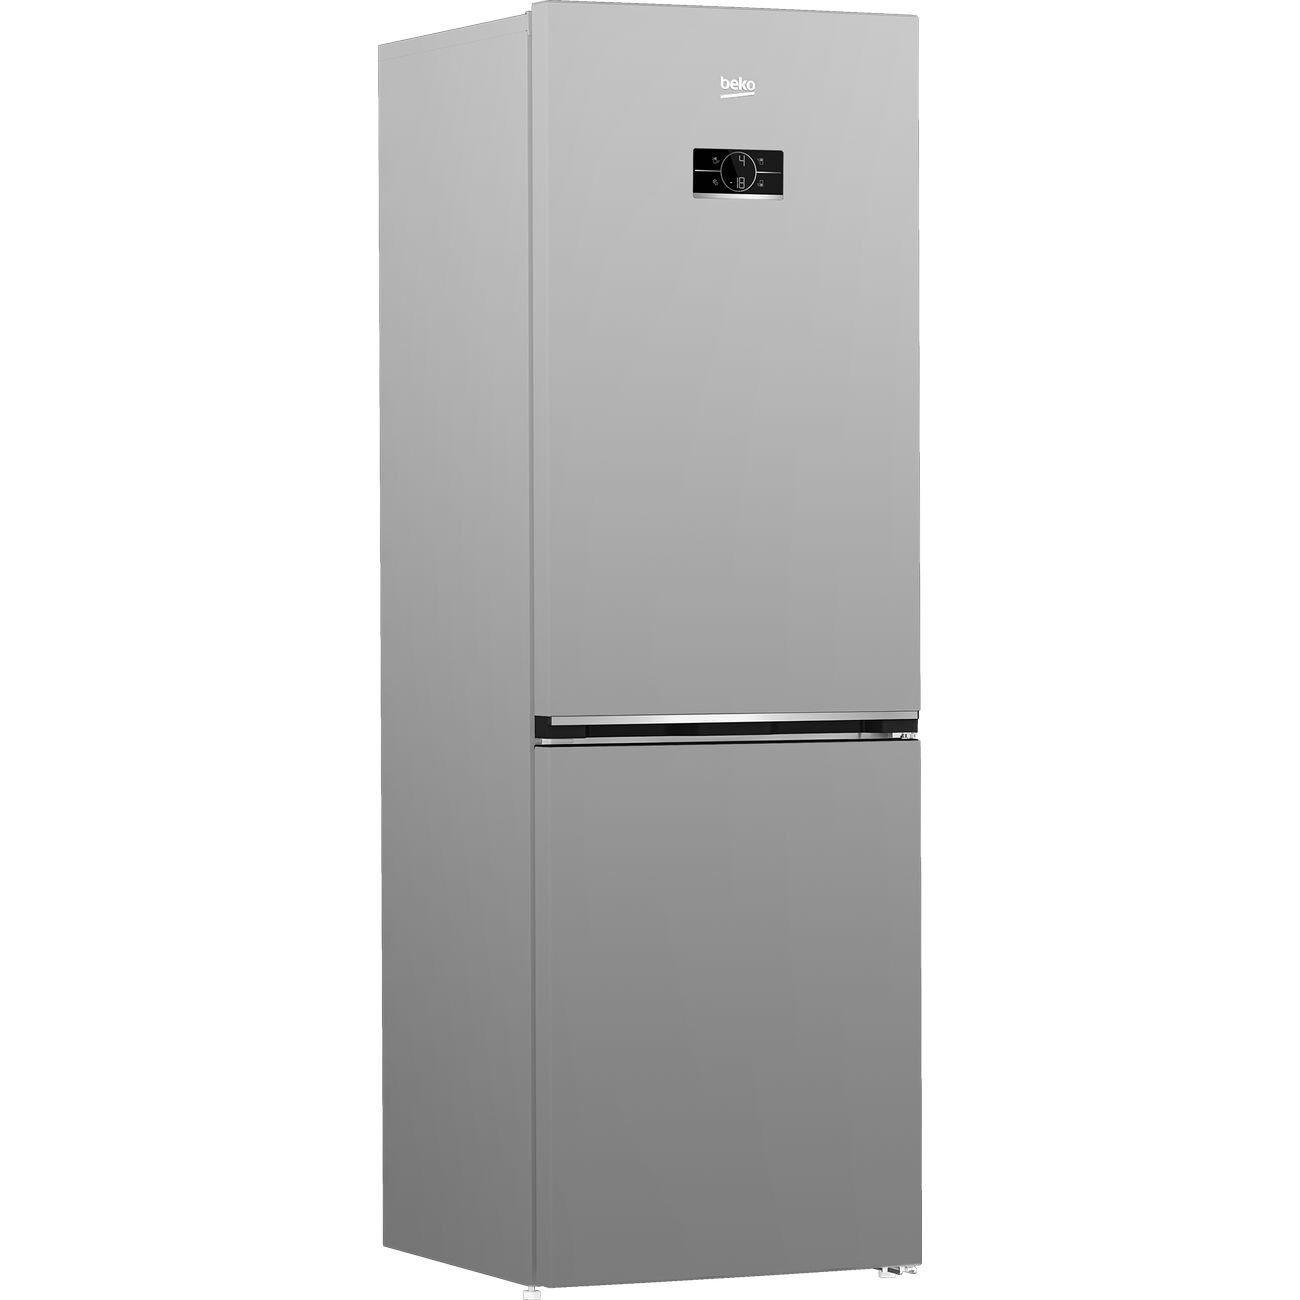 Холодильник Beko cnkl7321ec0w. Холодильник Beko CNKL 7321 ec0s. Холодильник Beko cnmv5310kc0w. Холодильник Beko RCNK 321e20. Холодильник двухкамерный купить в днс